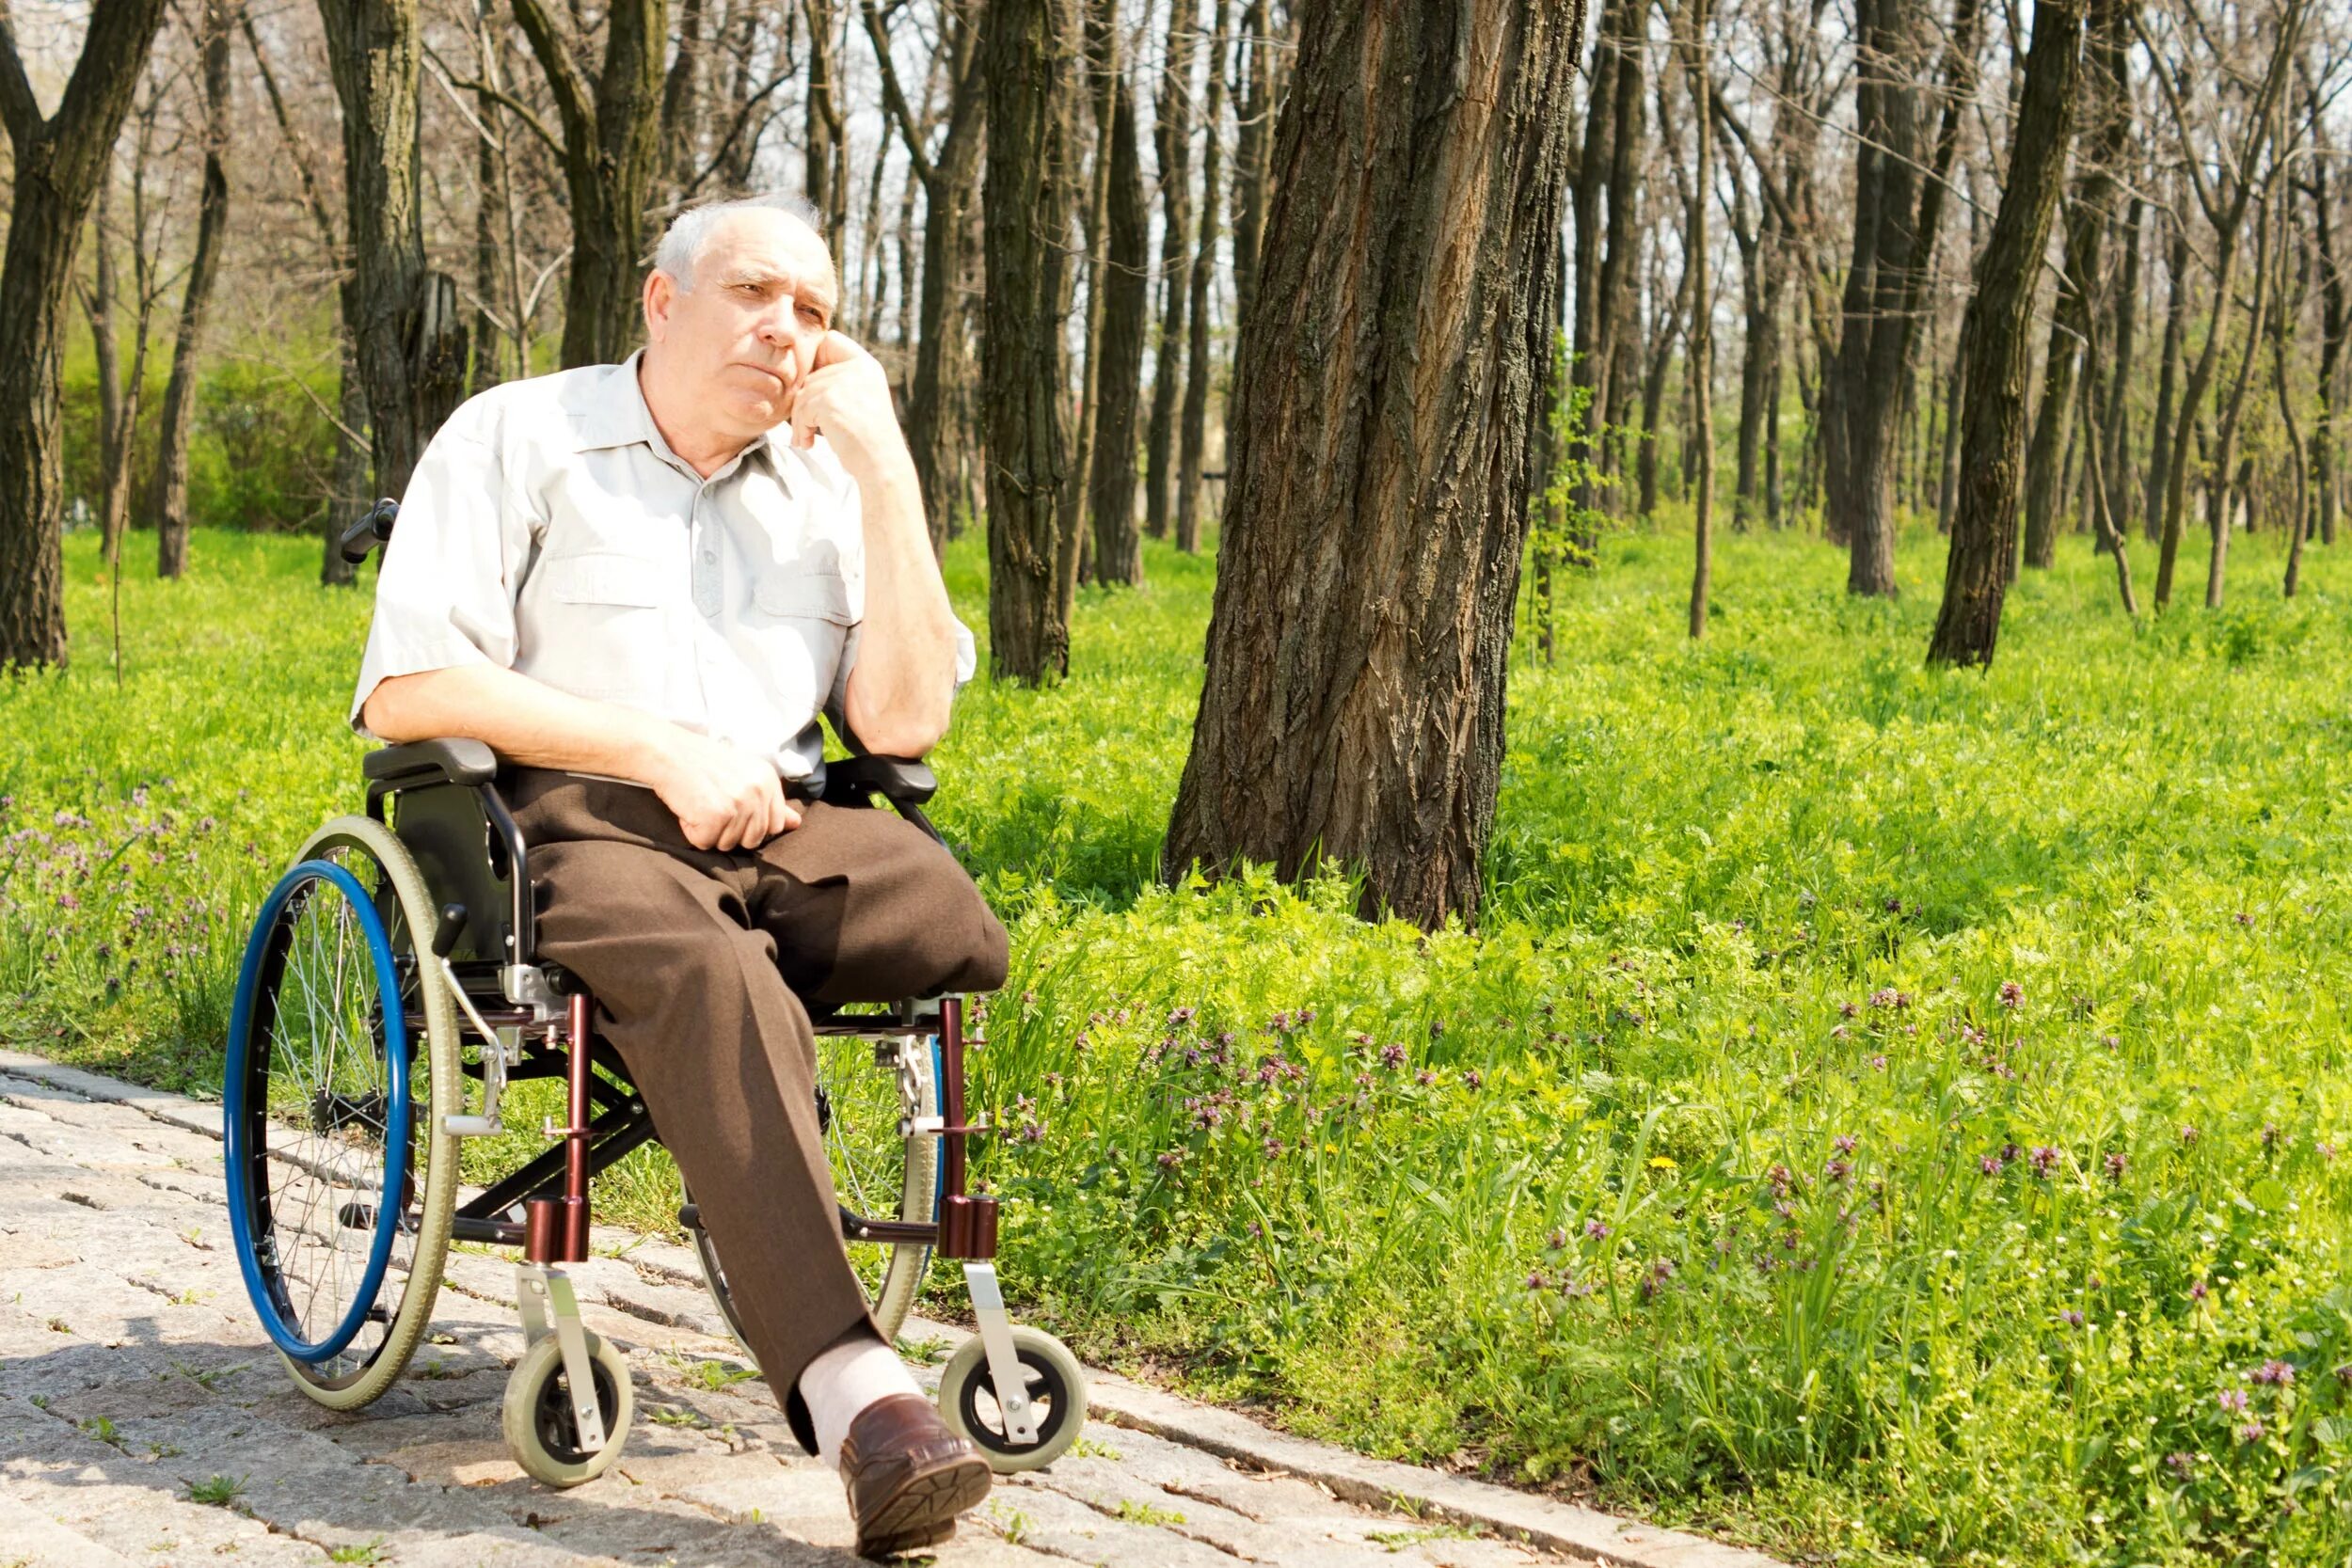 Дед на инвалидной коляске. Человек в инвалидной коляске. Пенсионер в инвалидном кресле. Старый инвалид. Коляска инвалидам 2 группы